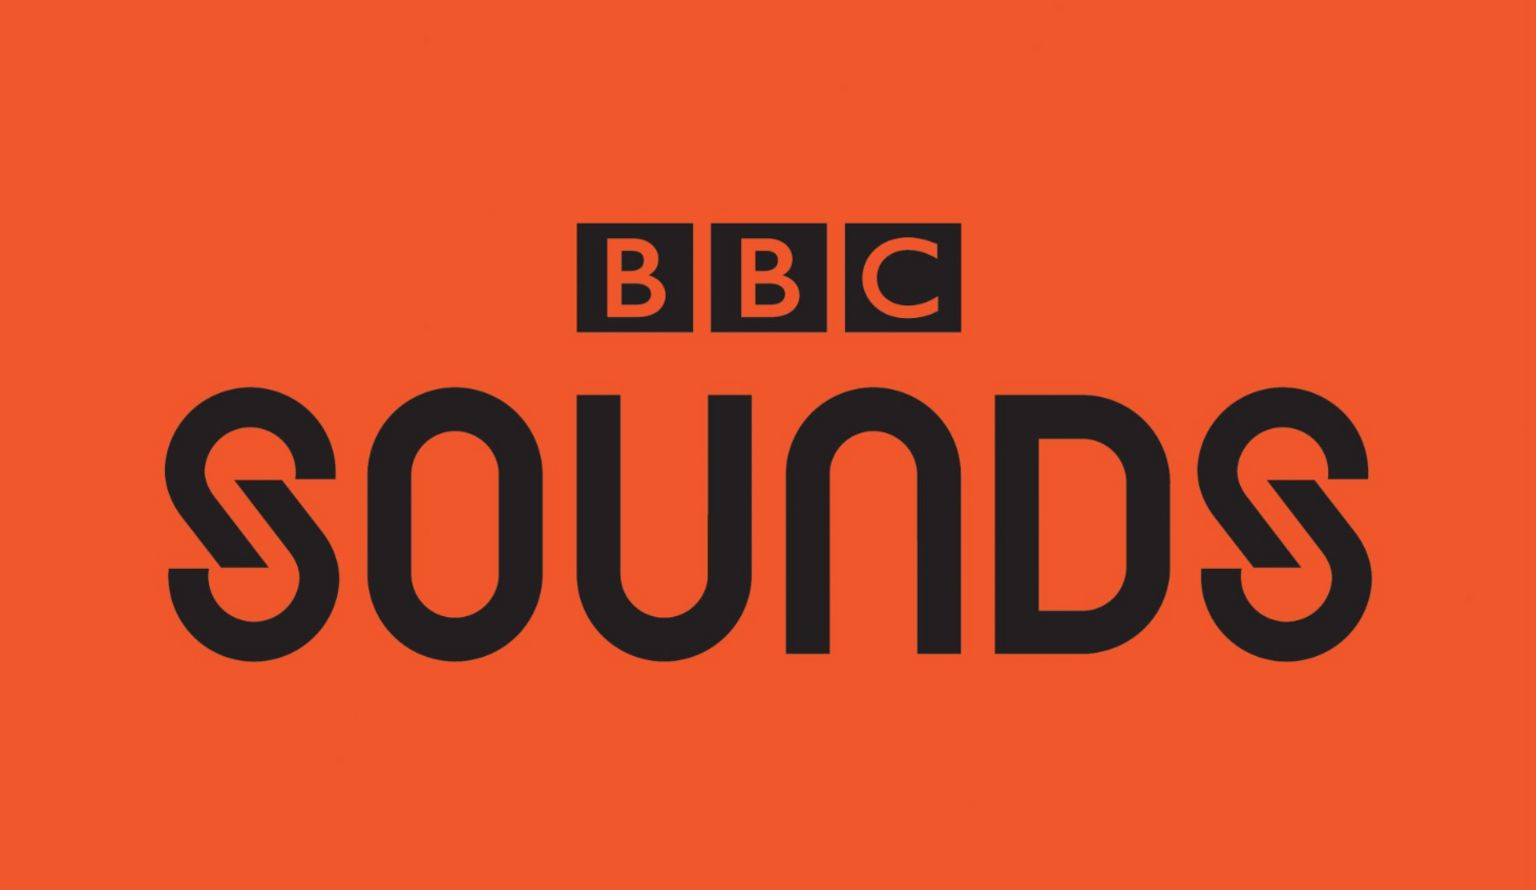 BBC Sounds logo